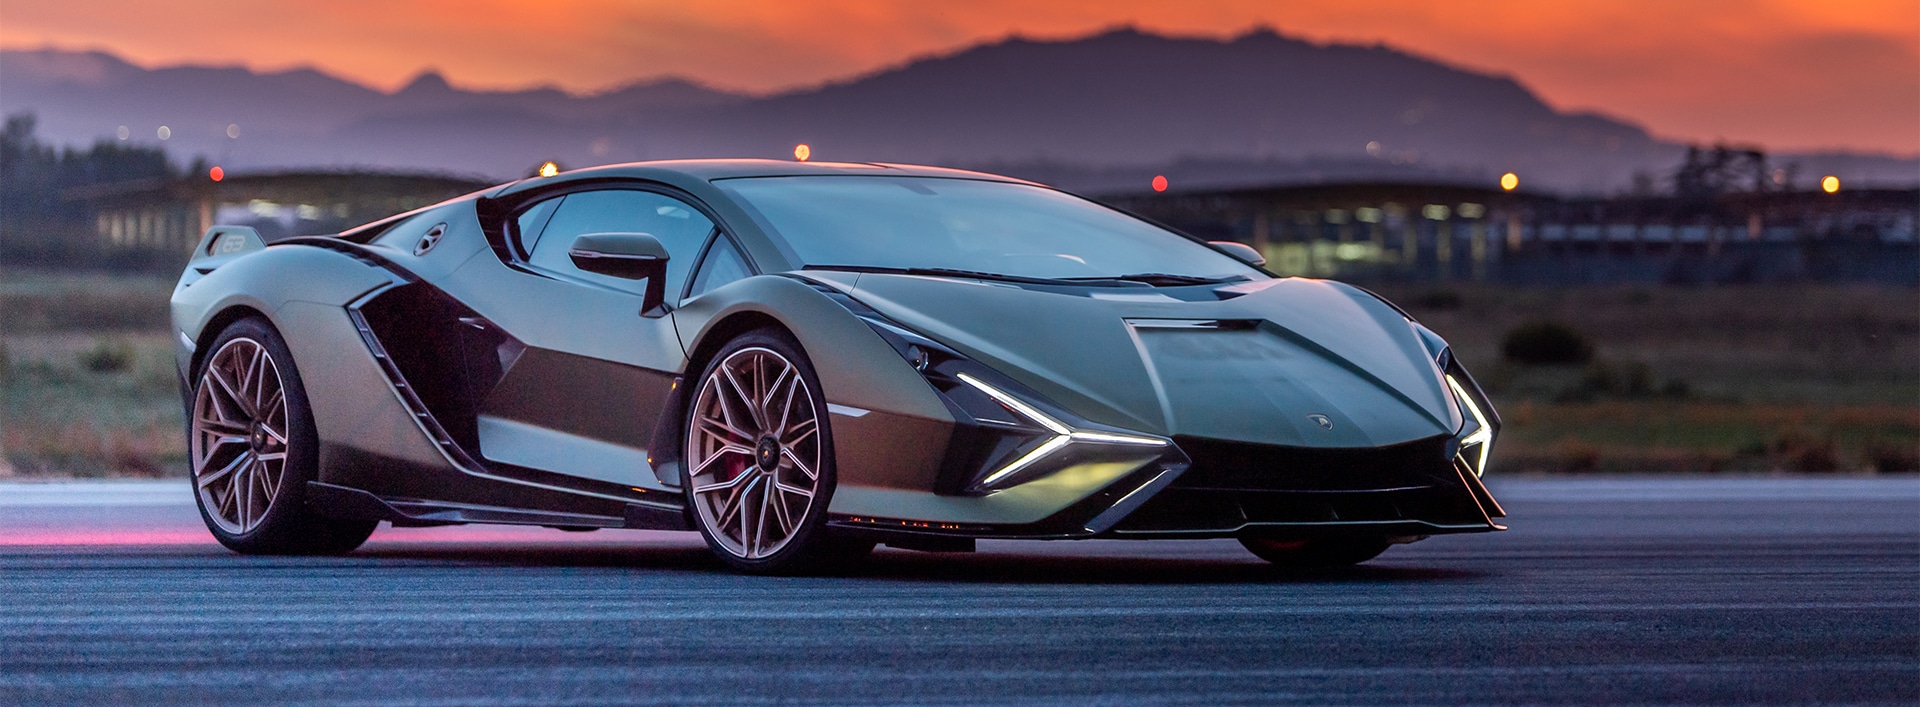 Rare Lamborghini Sián FKP 37 on the market for $5.9 million